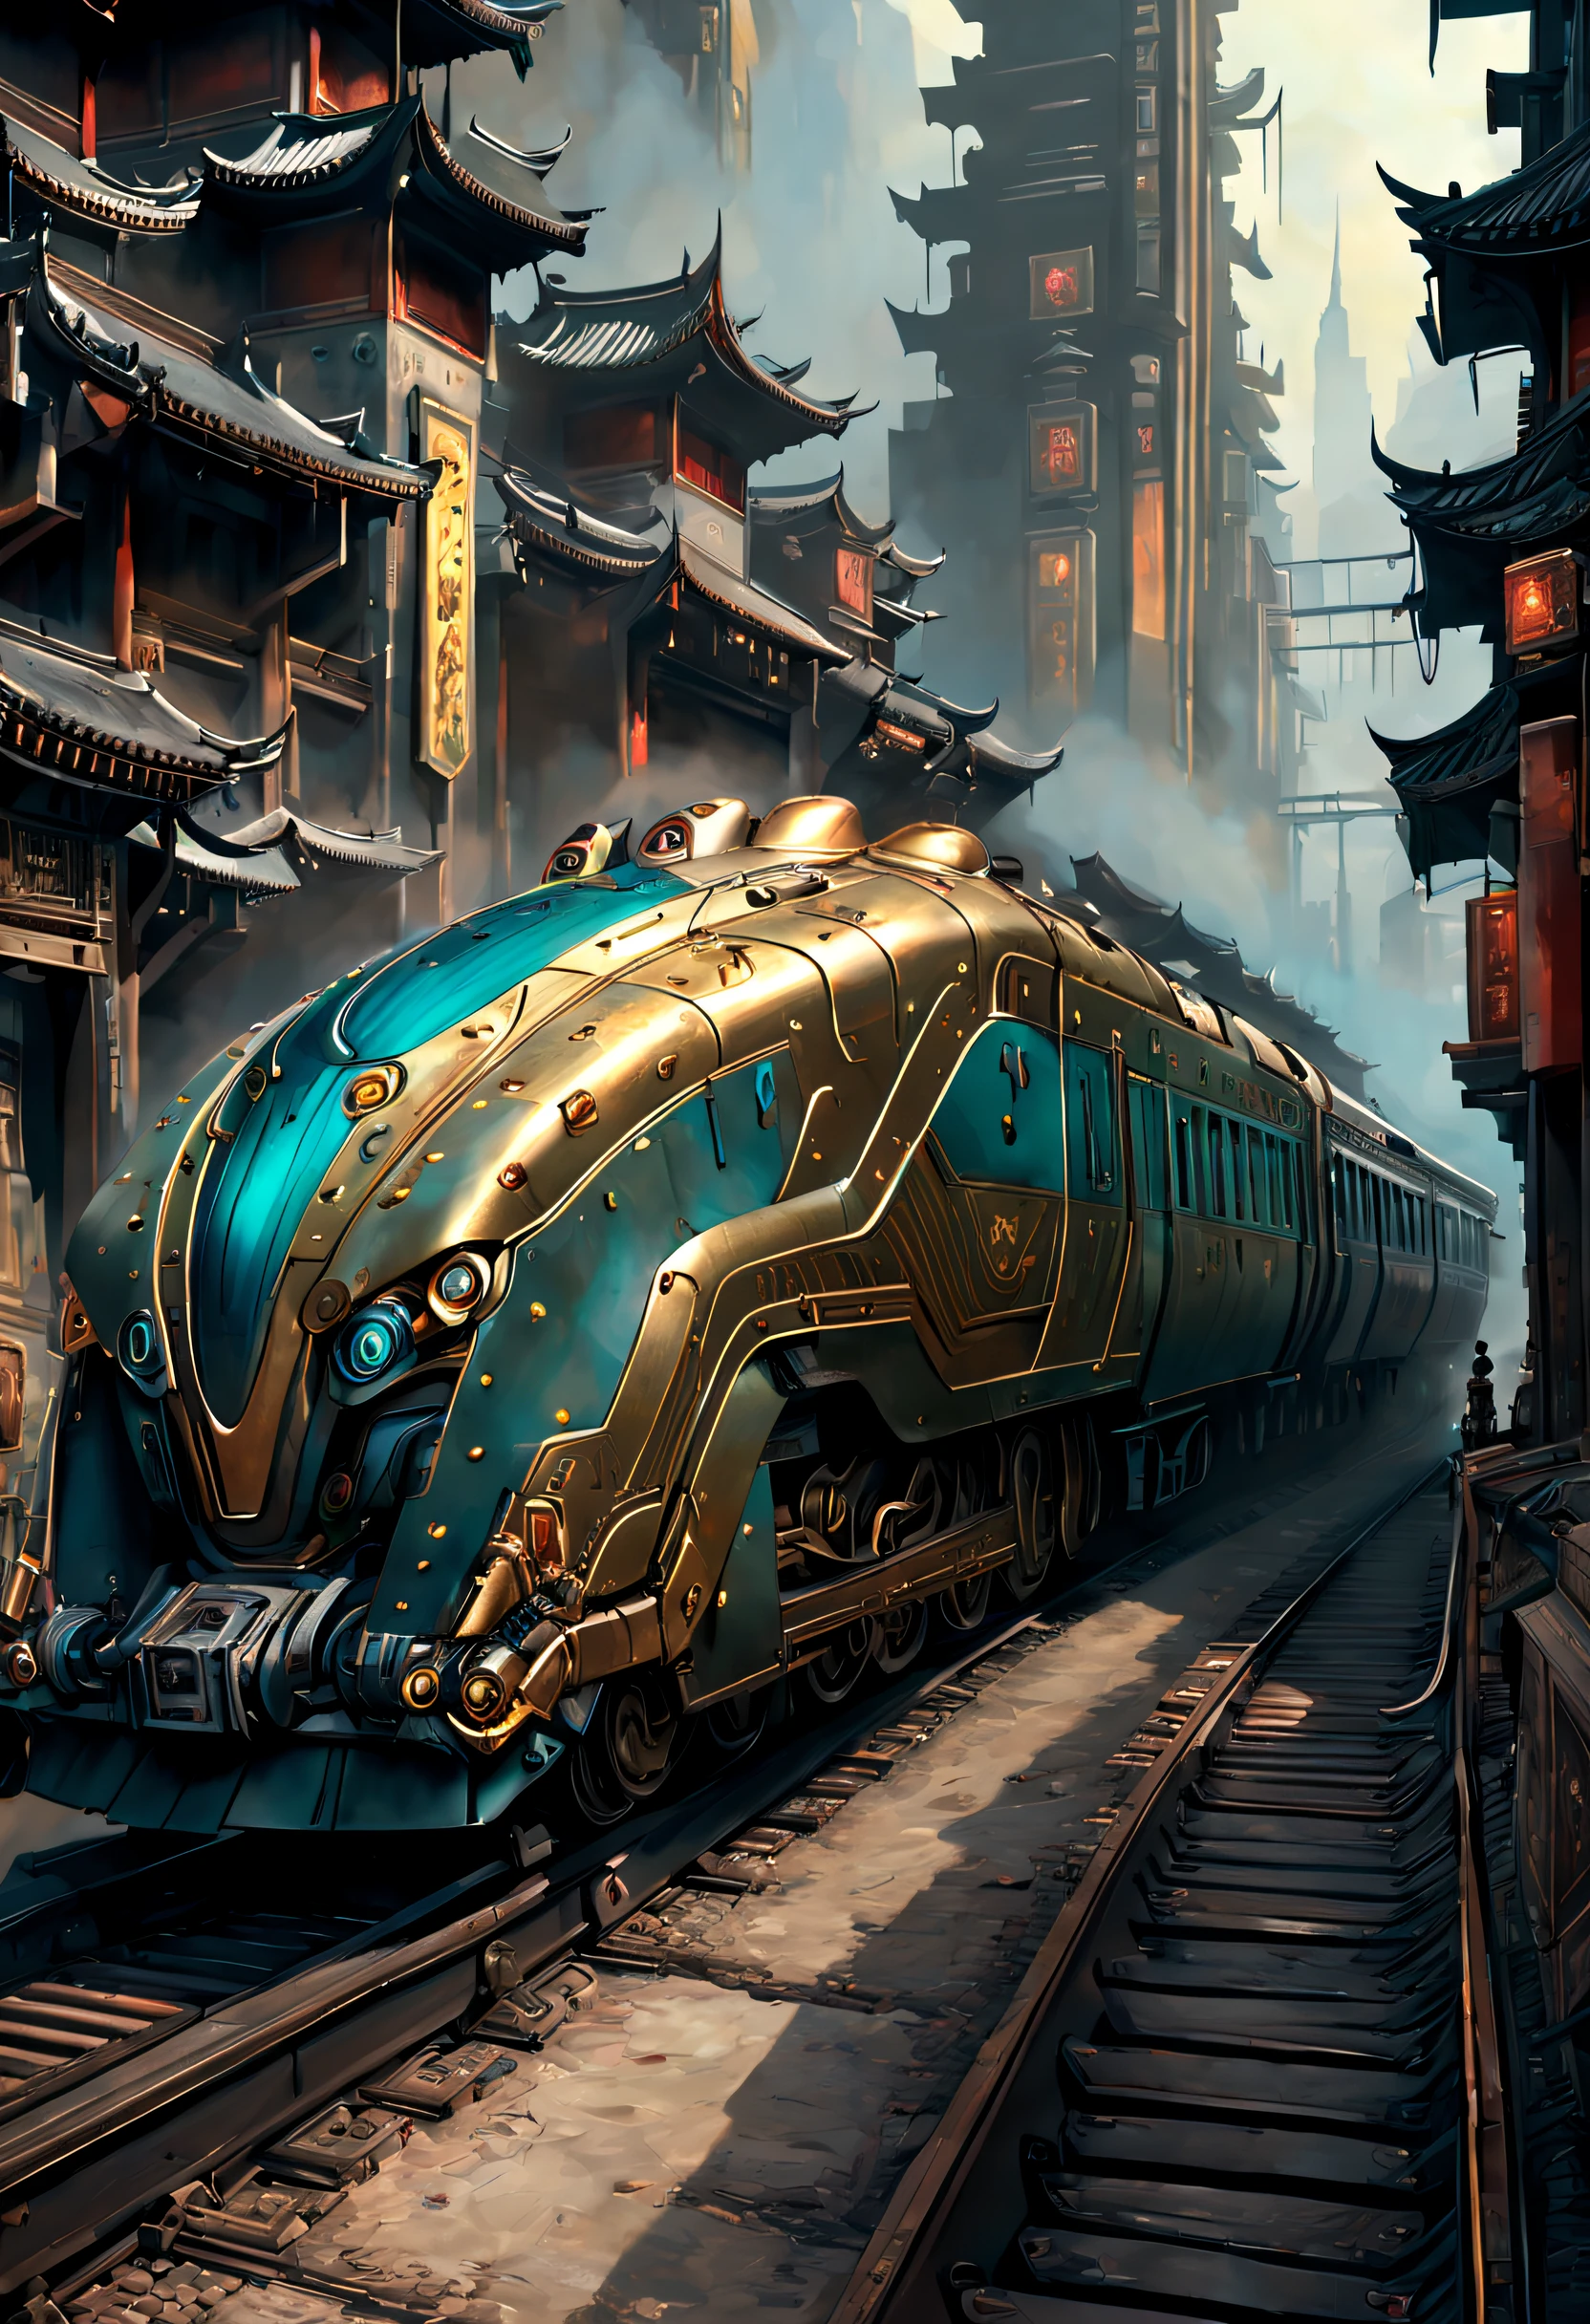 中国の古代都市を通過するSF列車の絵画，線路の上に立っている人々, スティーブン・コーデルに触発されて, 素晴らしいコンセプトペインティング, クレイグ・マリンズグレッグ・ルトコスキ, クレイグ・マリンズ, Inspired クレイグ・マリンズ, 非常にリアルなコンセプトアート, Dappled lighting クレイグ・マリンズ, 蒸気機関マット塗装, ジェームズ・ガーニーの絵画スタイル, 非常に精細な4Kペインティング, クレイグ・マリンズスタイル